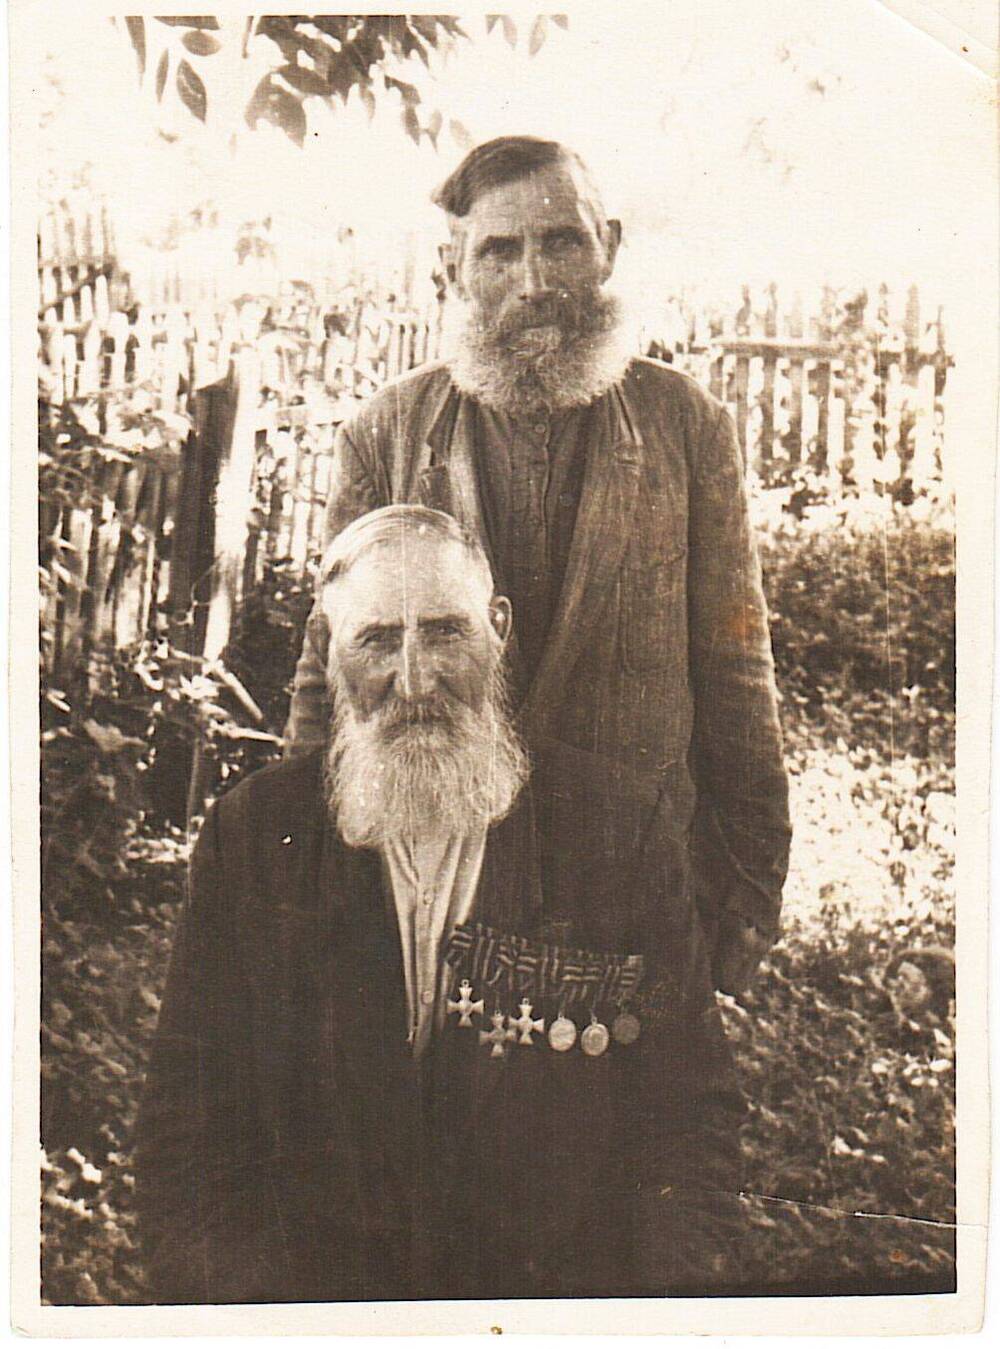 Фотопортрет: Каньшин Андрей Дмитриевич и Барабанов Егор Матвеевич - участники гражданской войны.